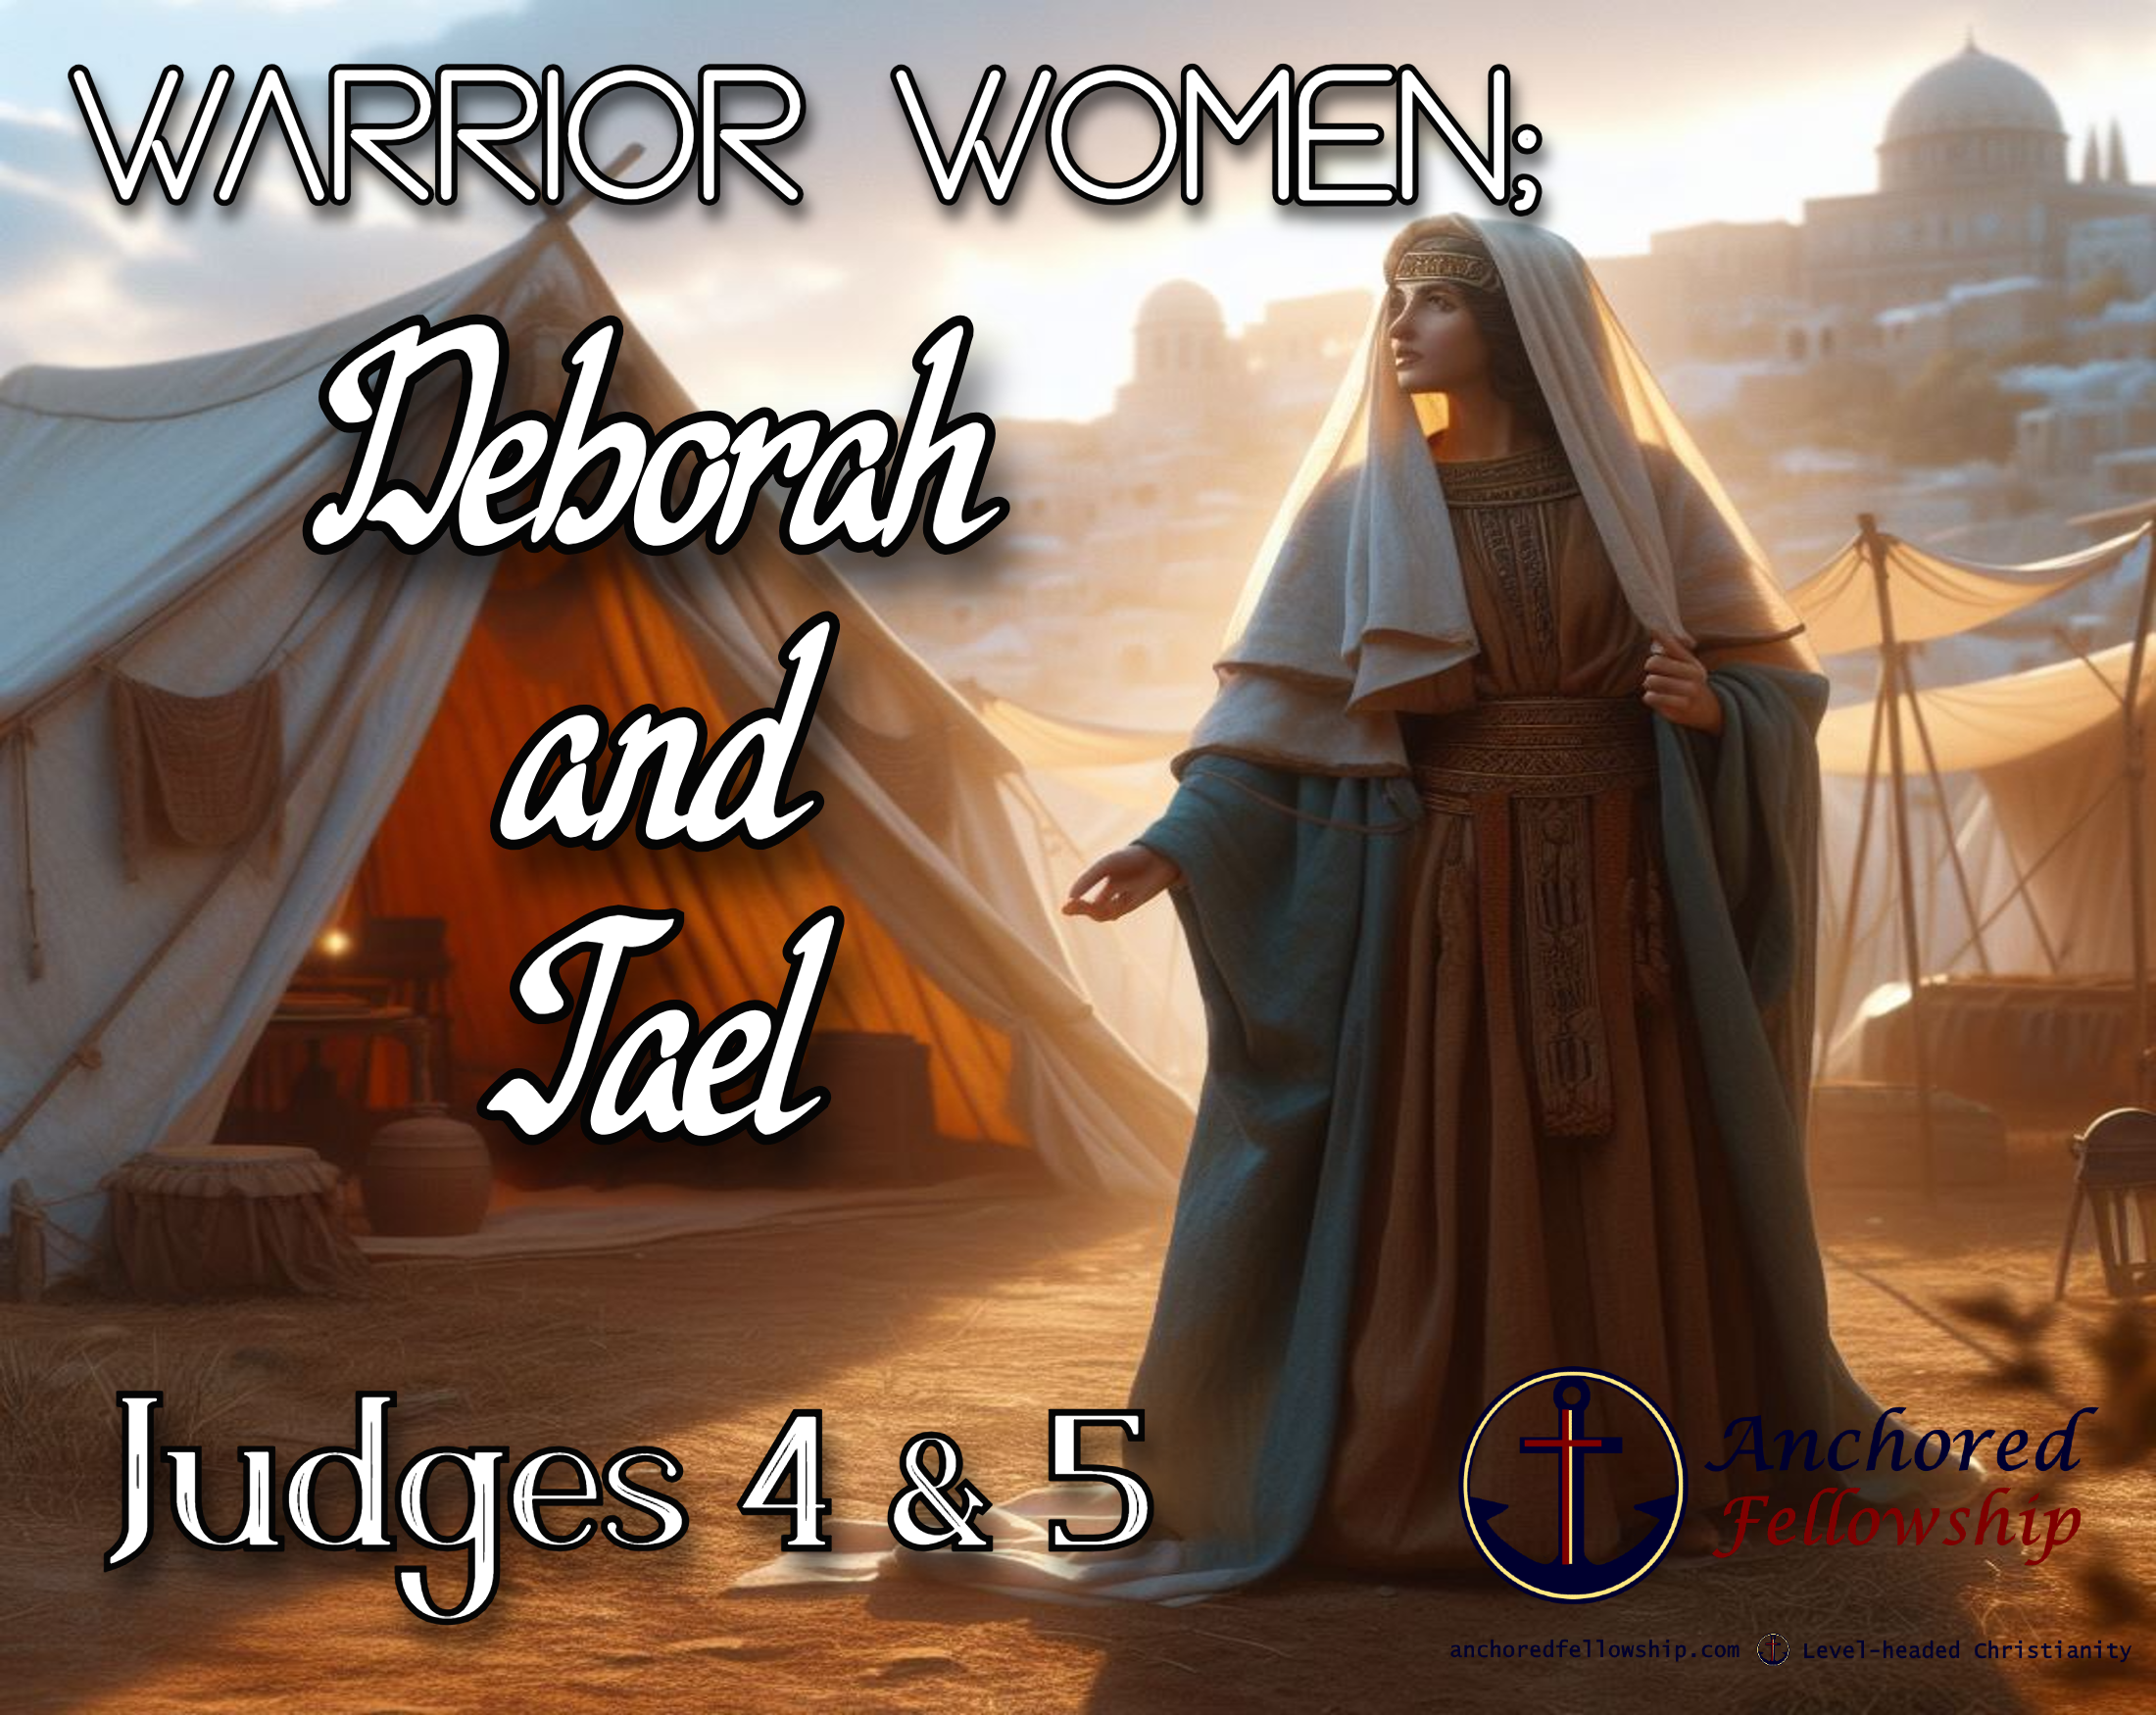 Warrior Women; Deborah and Jael Image